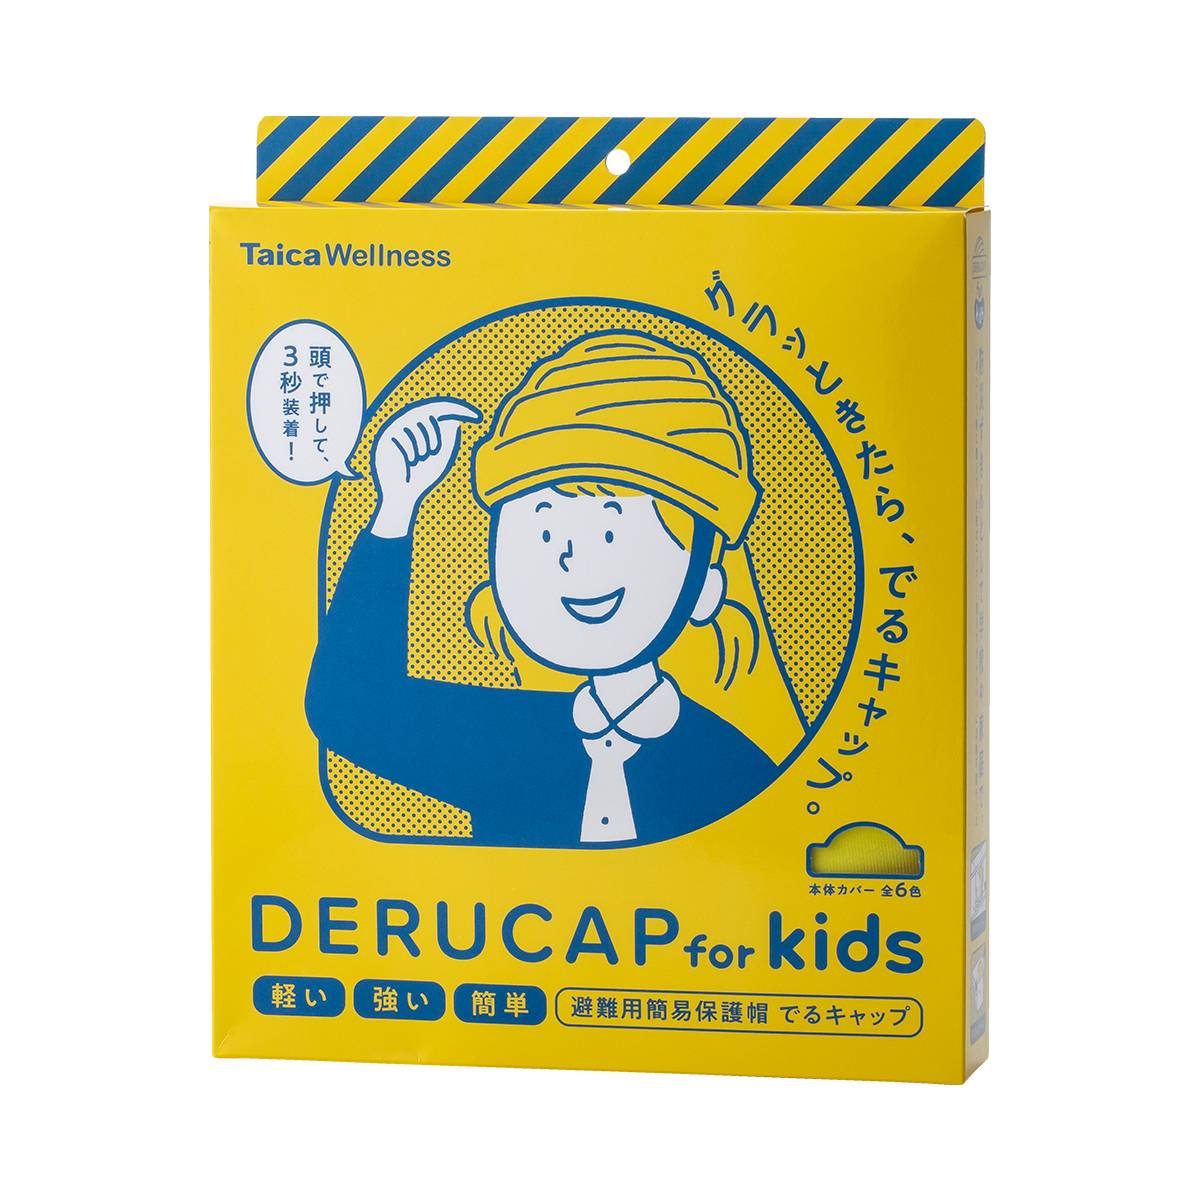 でるキャップ for kids 【イエロー】 タイカ 避難用簡易保護帽